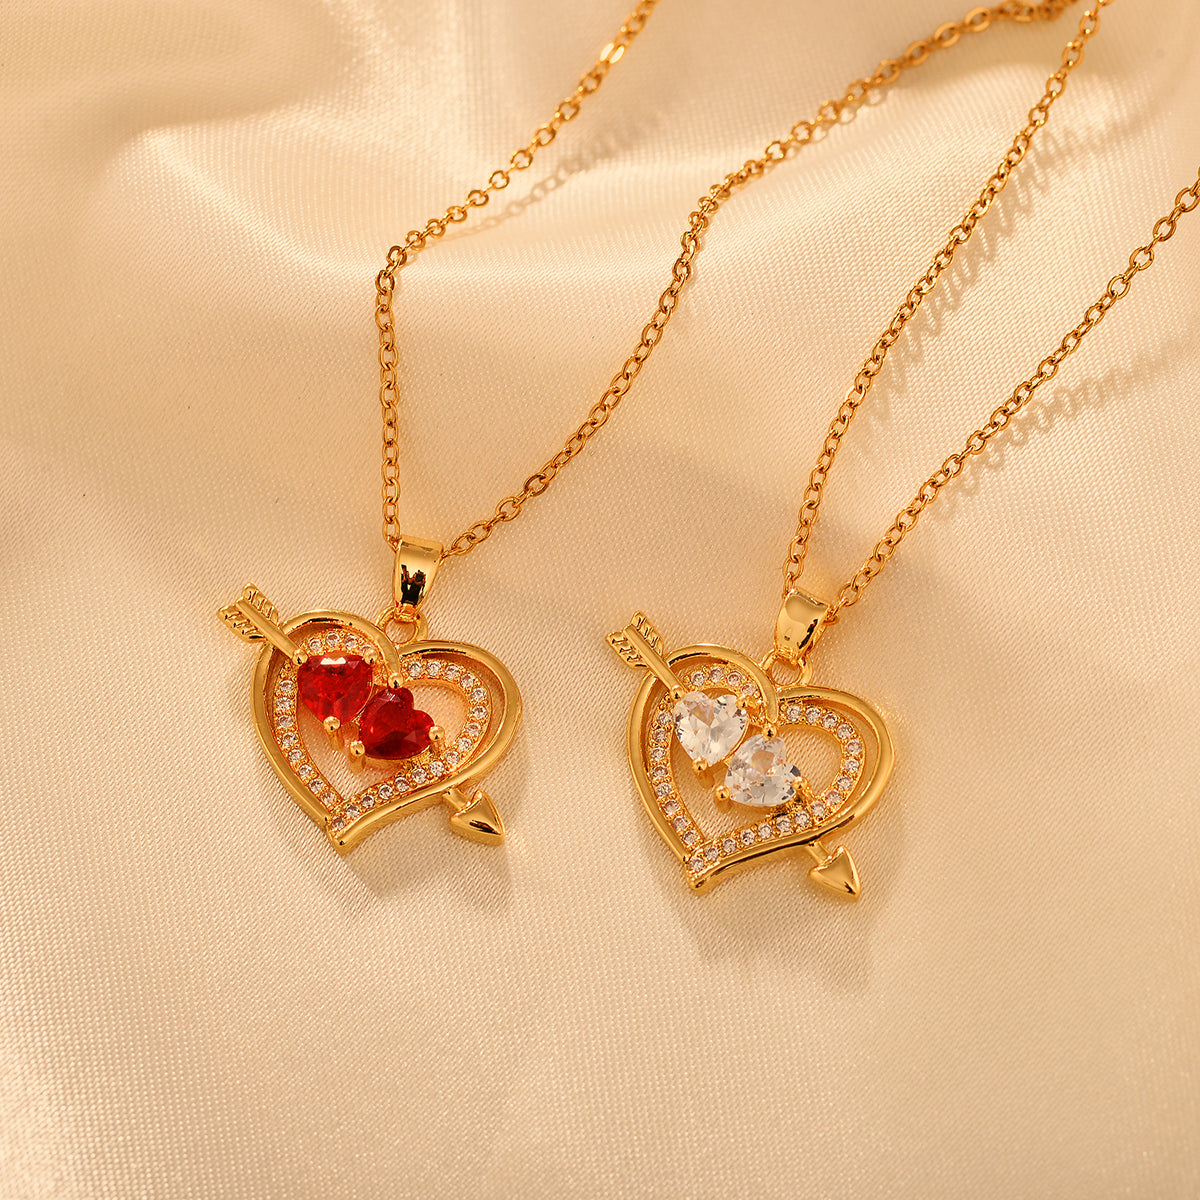 Copper Vintage Style Heart Shape Pendant Necklace